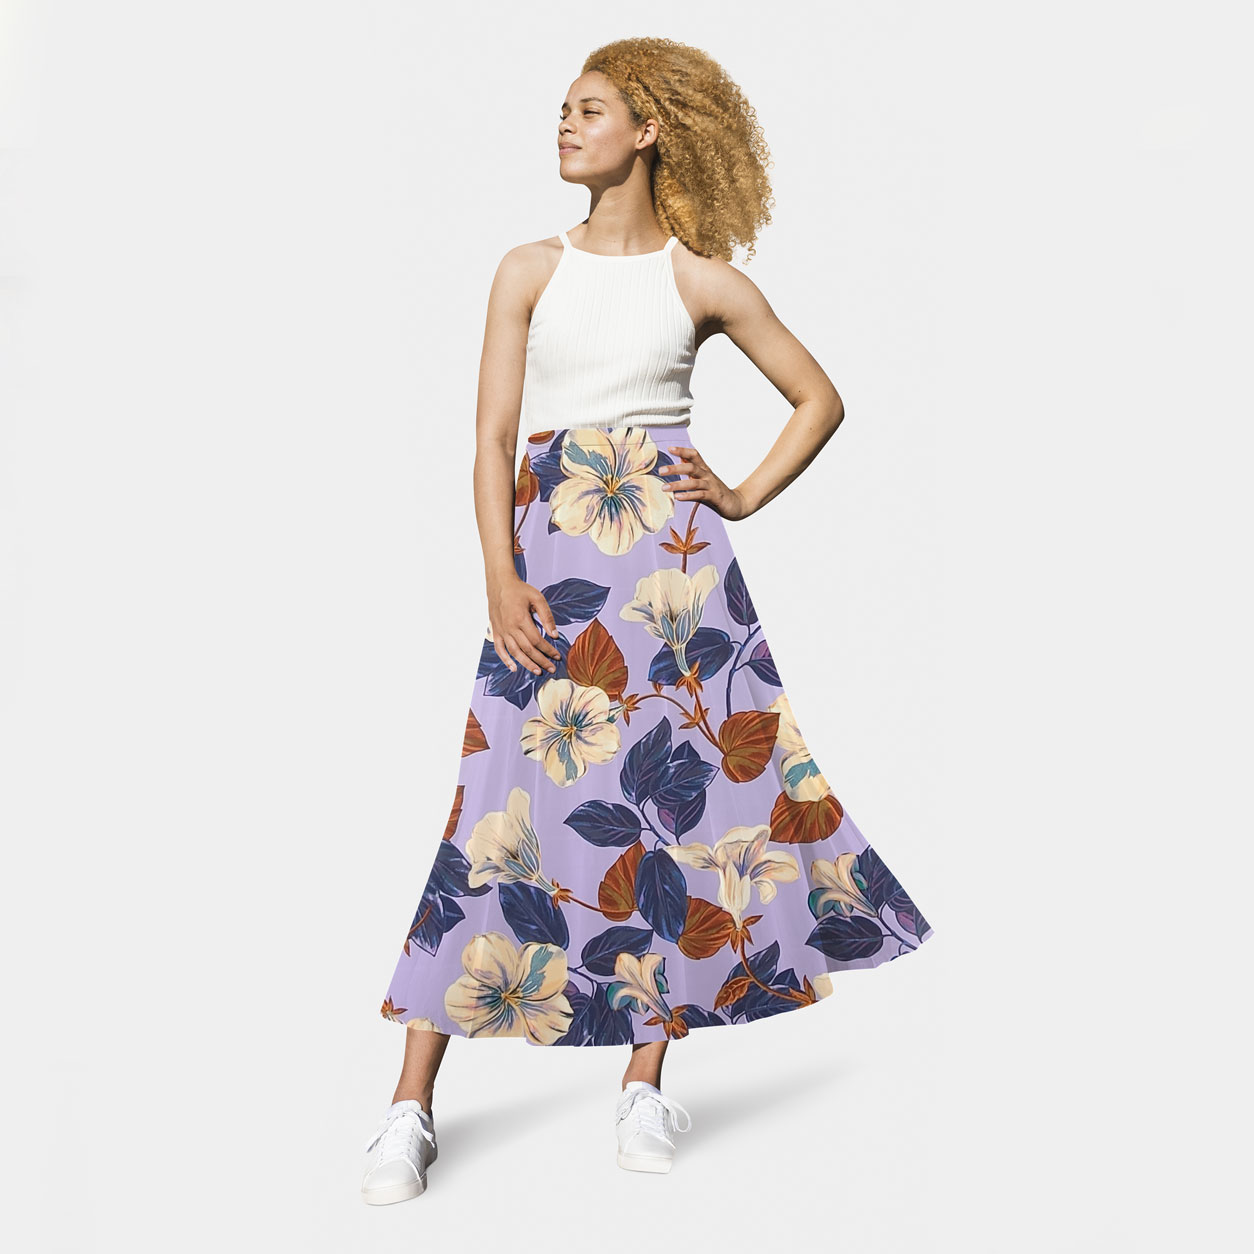 rasetto-online-per-abbigliamento-disegno-floreale-sfondo-lilla